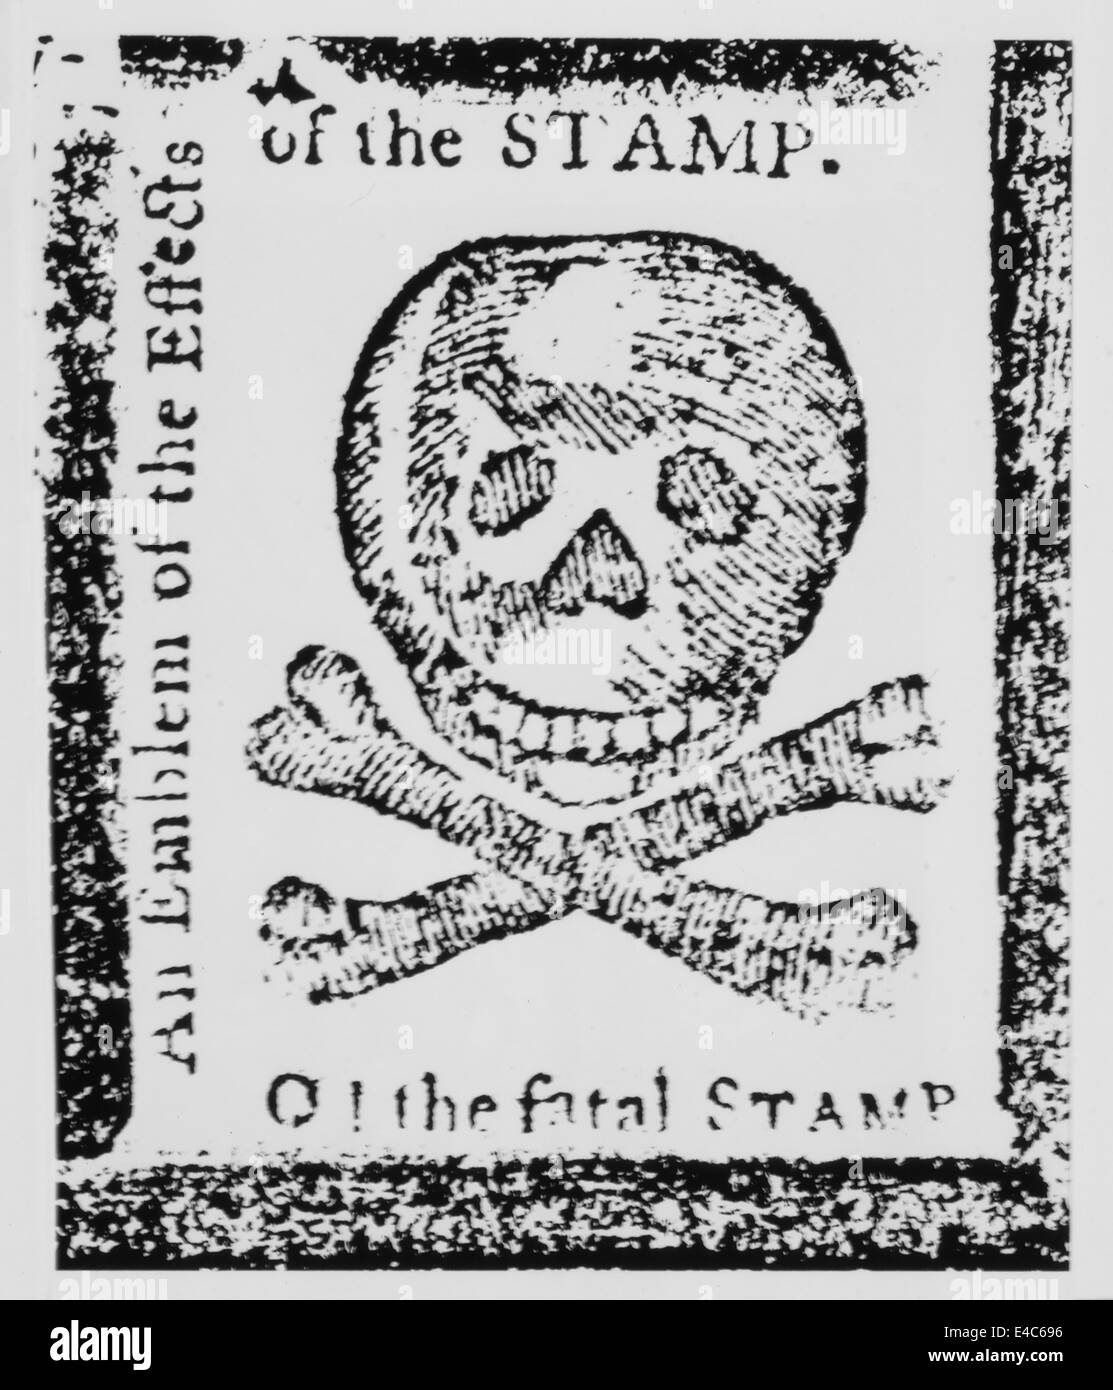 ' O! Die tödlichen Stempel, Emblem der Effekte des Stempels ", kolonialen Reaktion auf das Stempelgesetz im Pennsylvania Journal veröffentlicht, 1765 Stockfoto